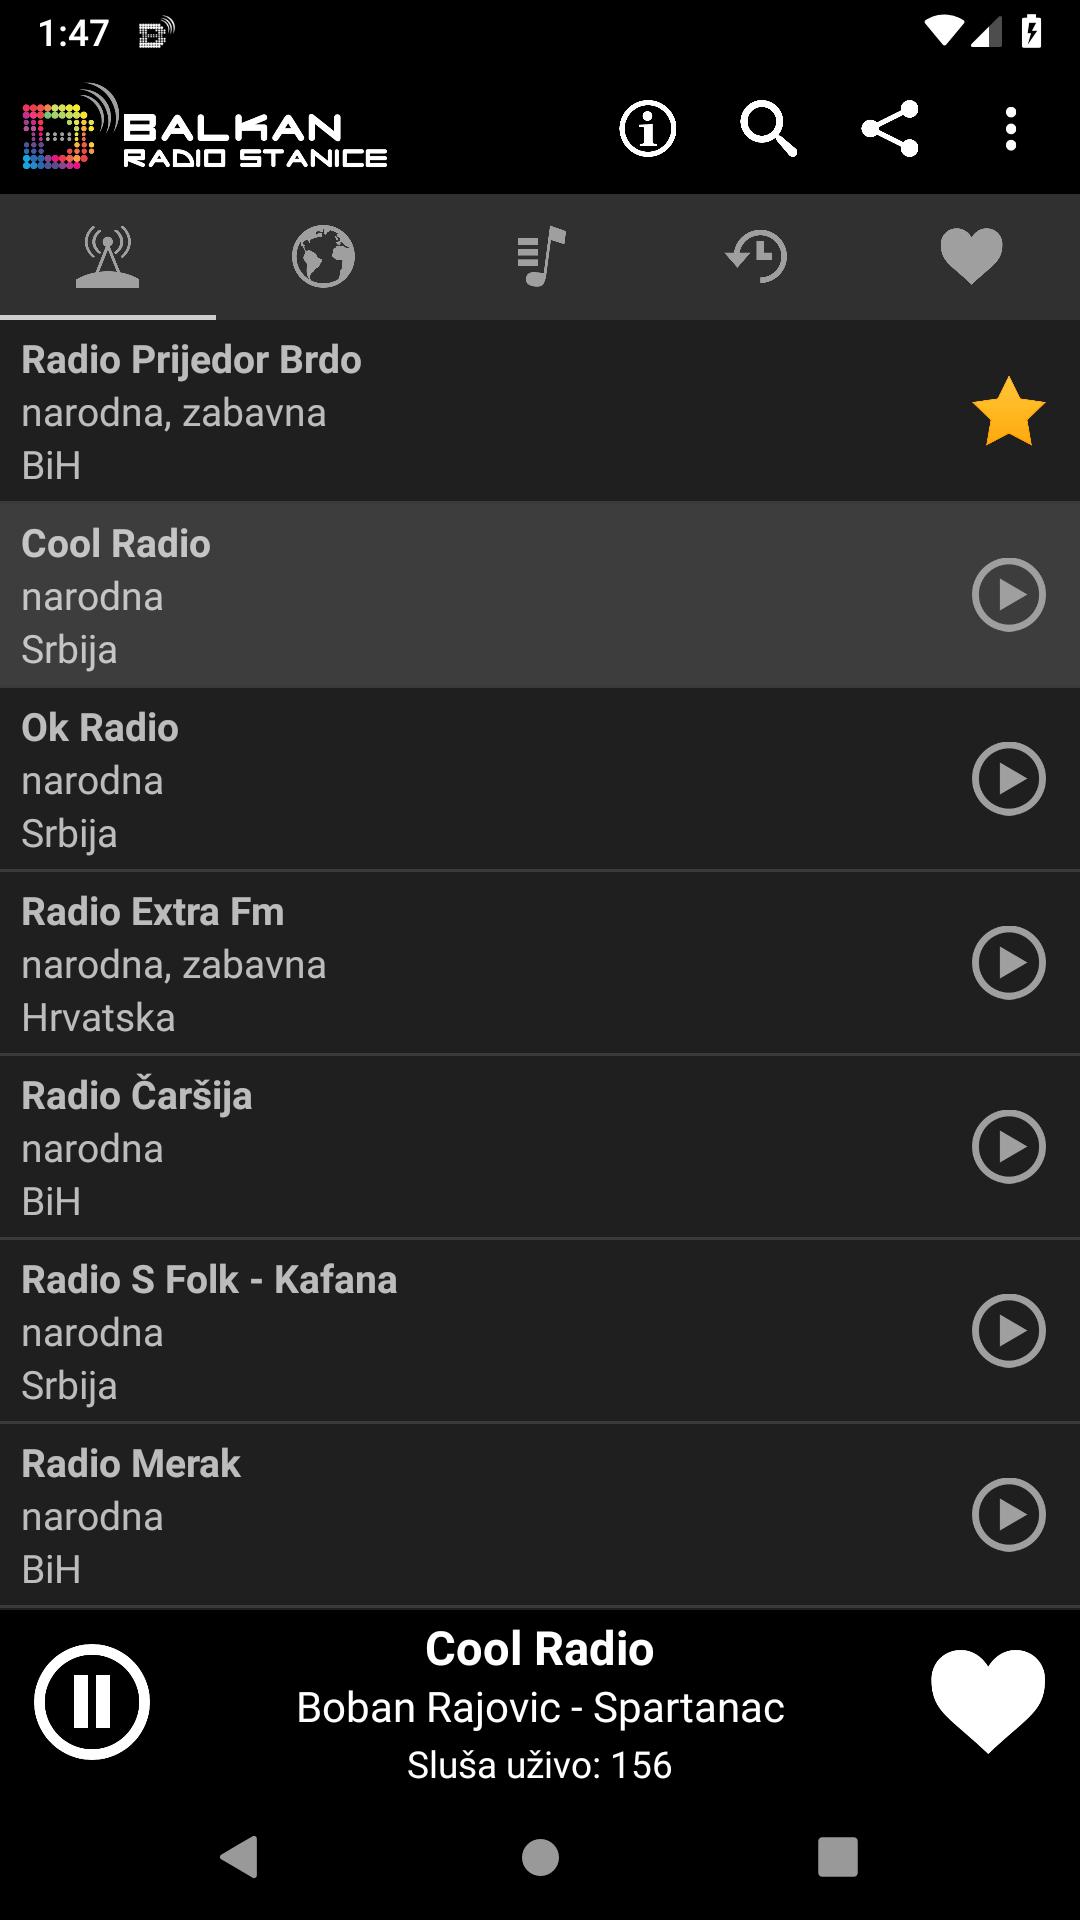 Balkan Radio Stanice für Android - APK herunterladen